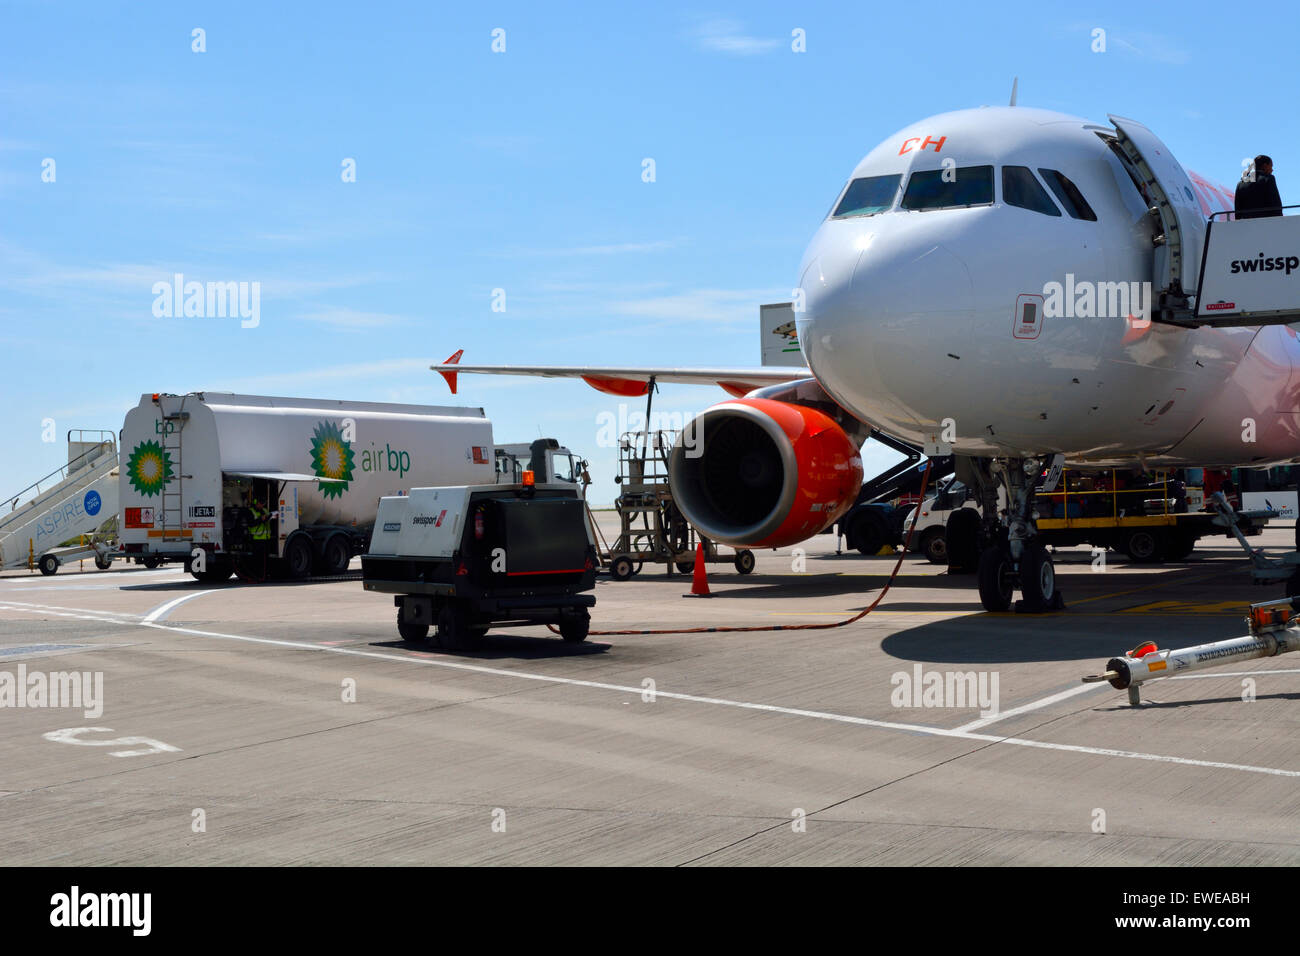 En cours d'entretien avion à l'aéroport de Bristol, BRS, UK Banque D'Images